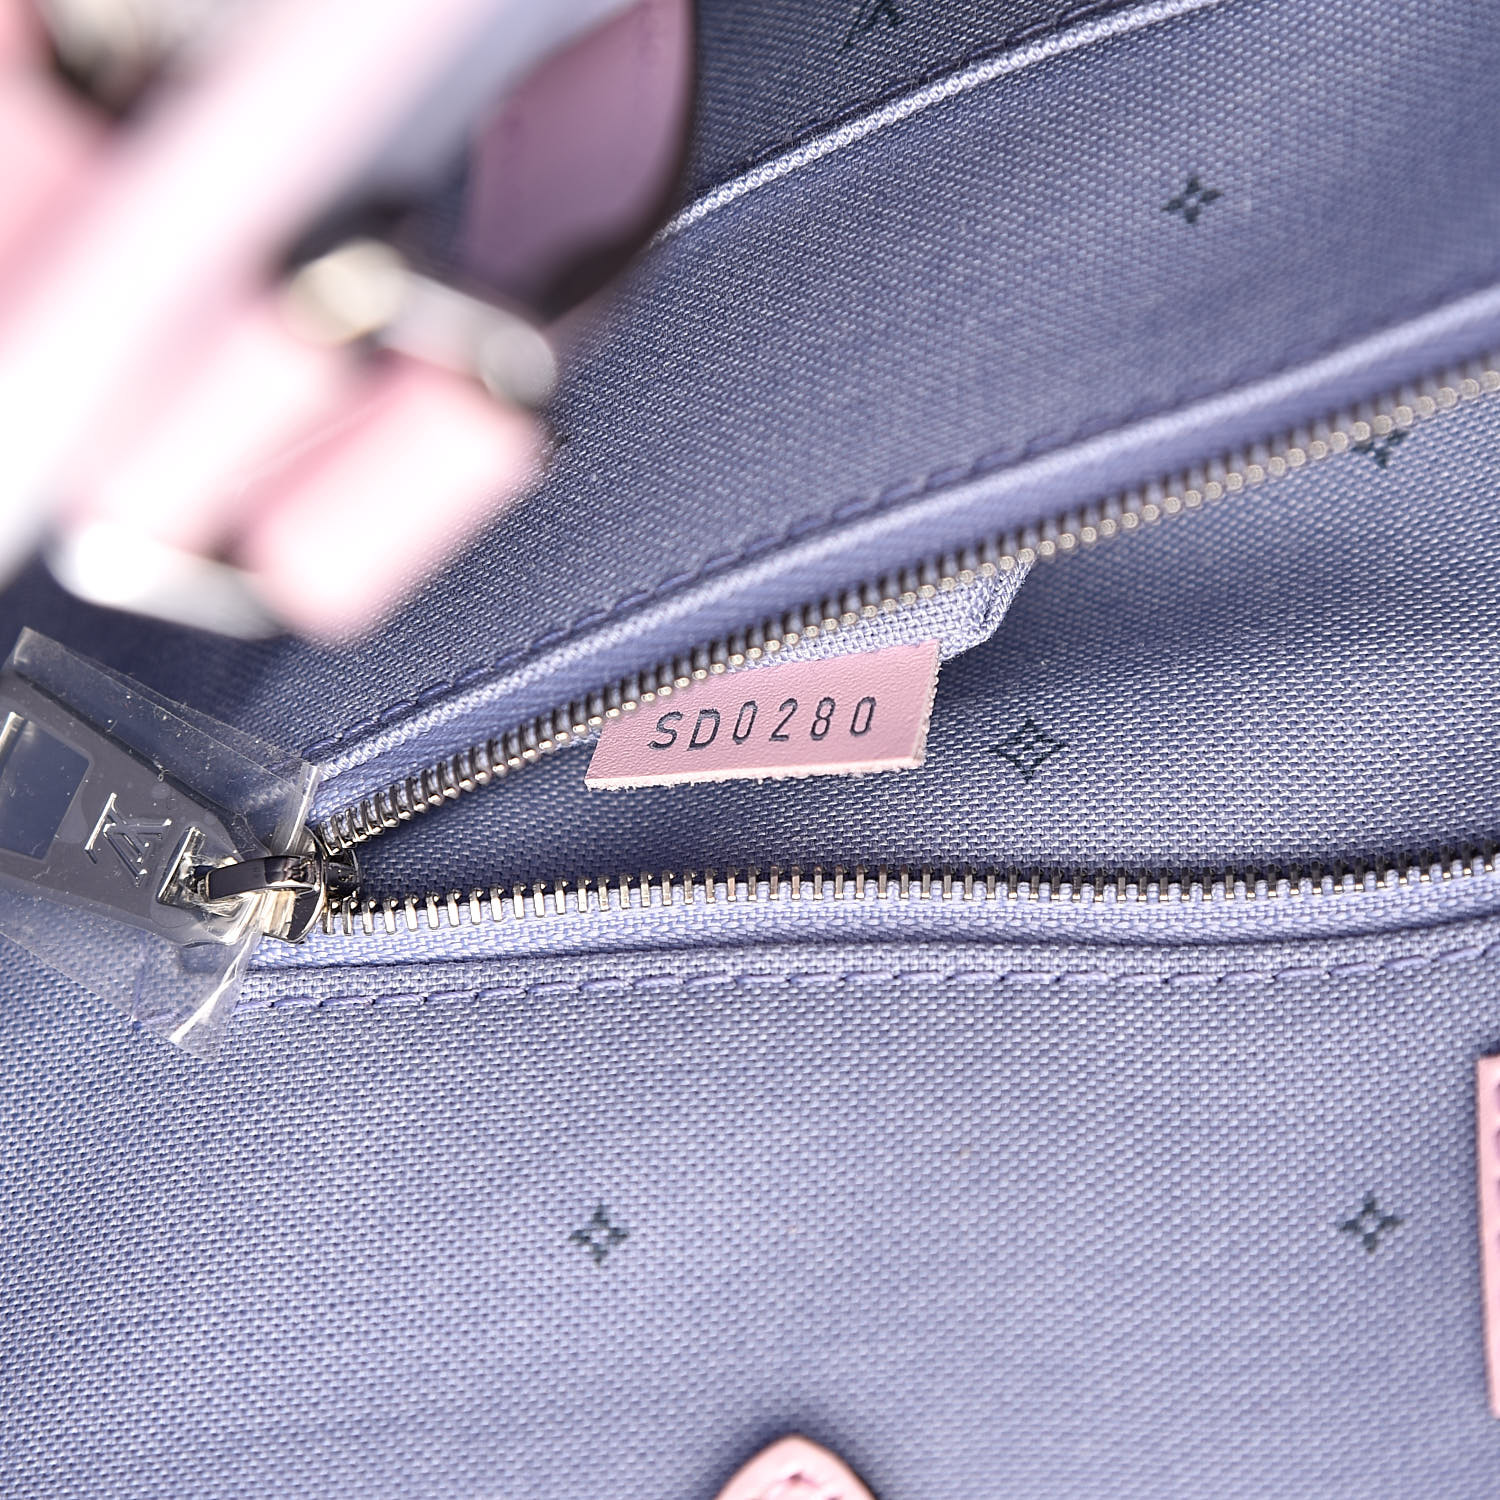 Shop Louis Vuitton Pastel Monogram Knit Top (1A9XPM, 1A9XPL